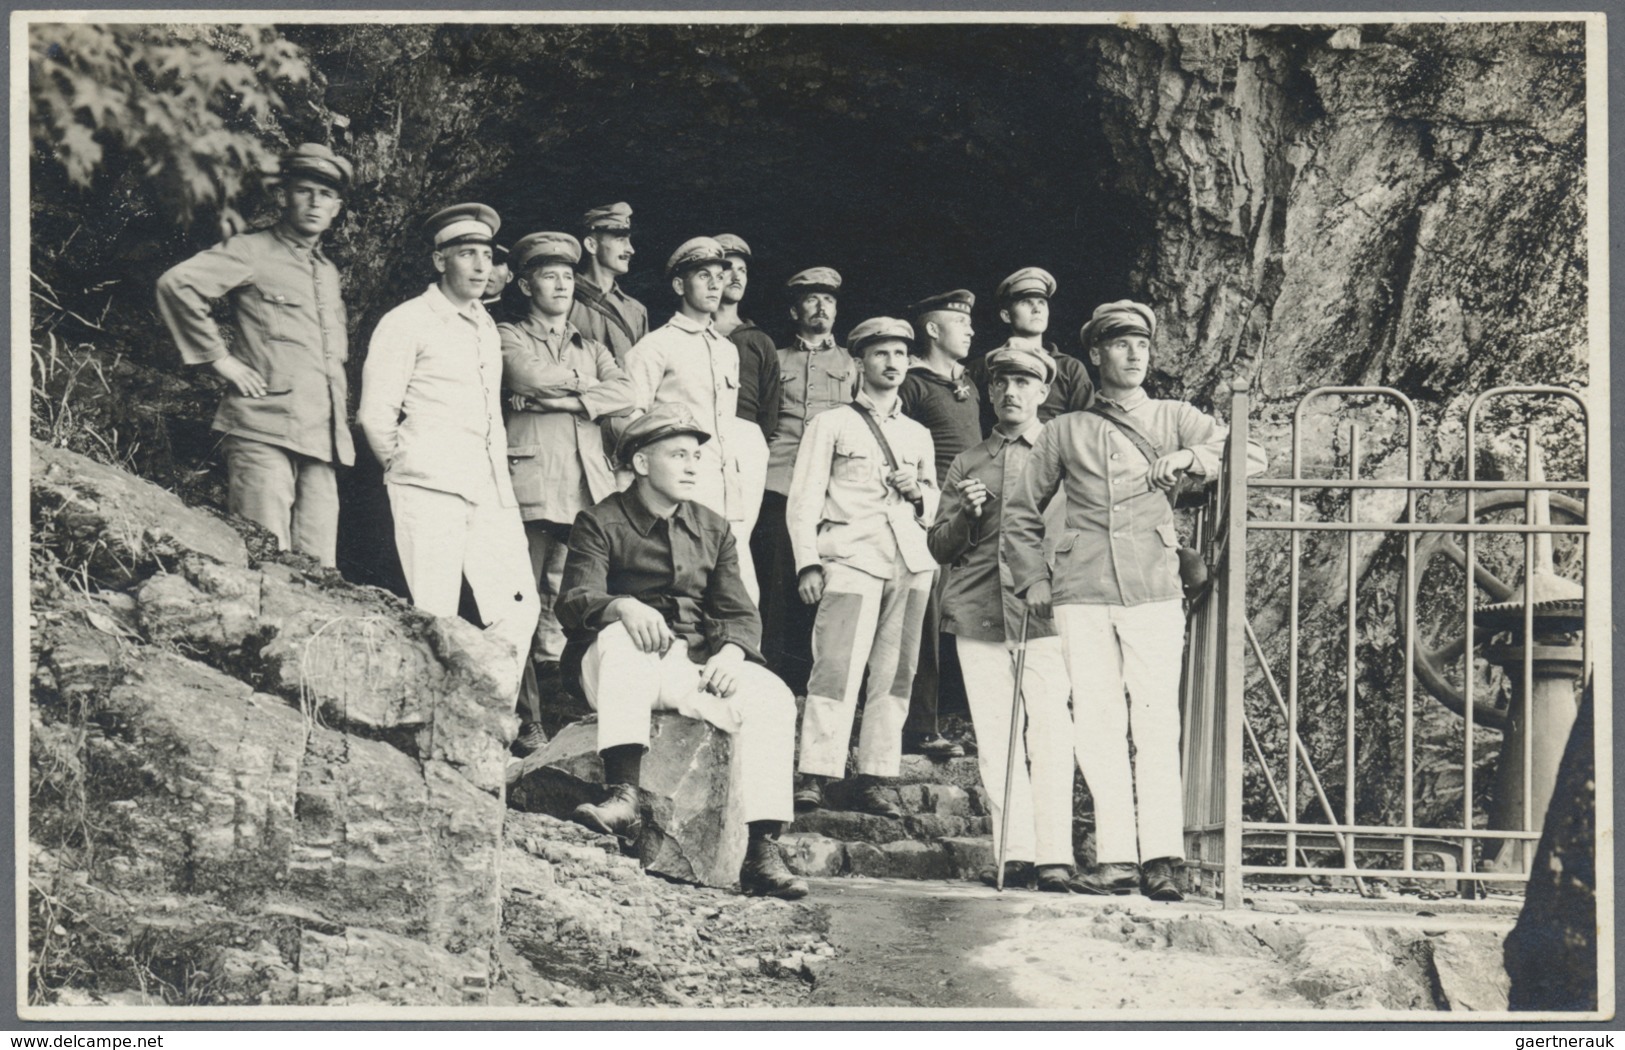 Br/ Lagerpost Tsingtau: 1914/15, 22 Belege vorwiegend Photographien von Kgf. (dabei zwei Portraits von G